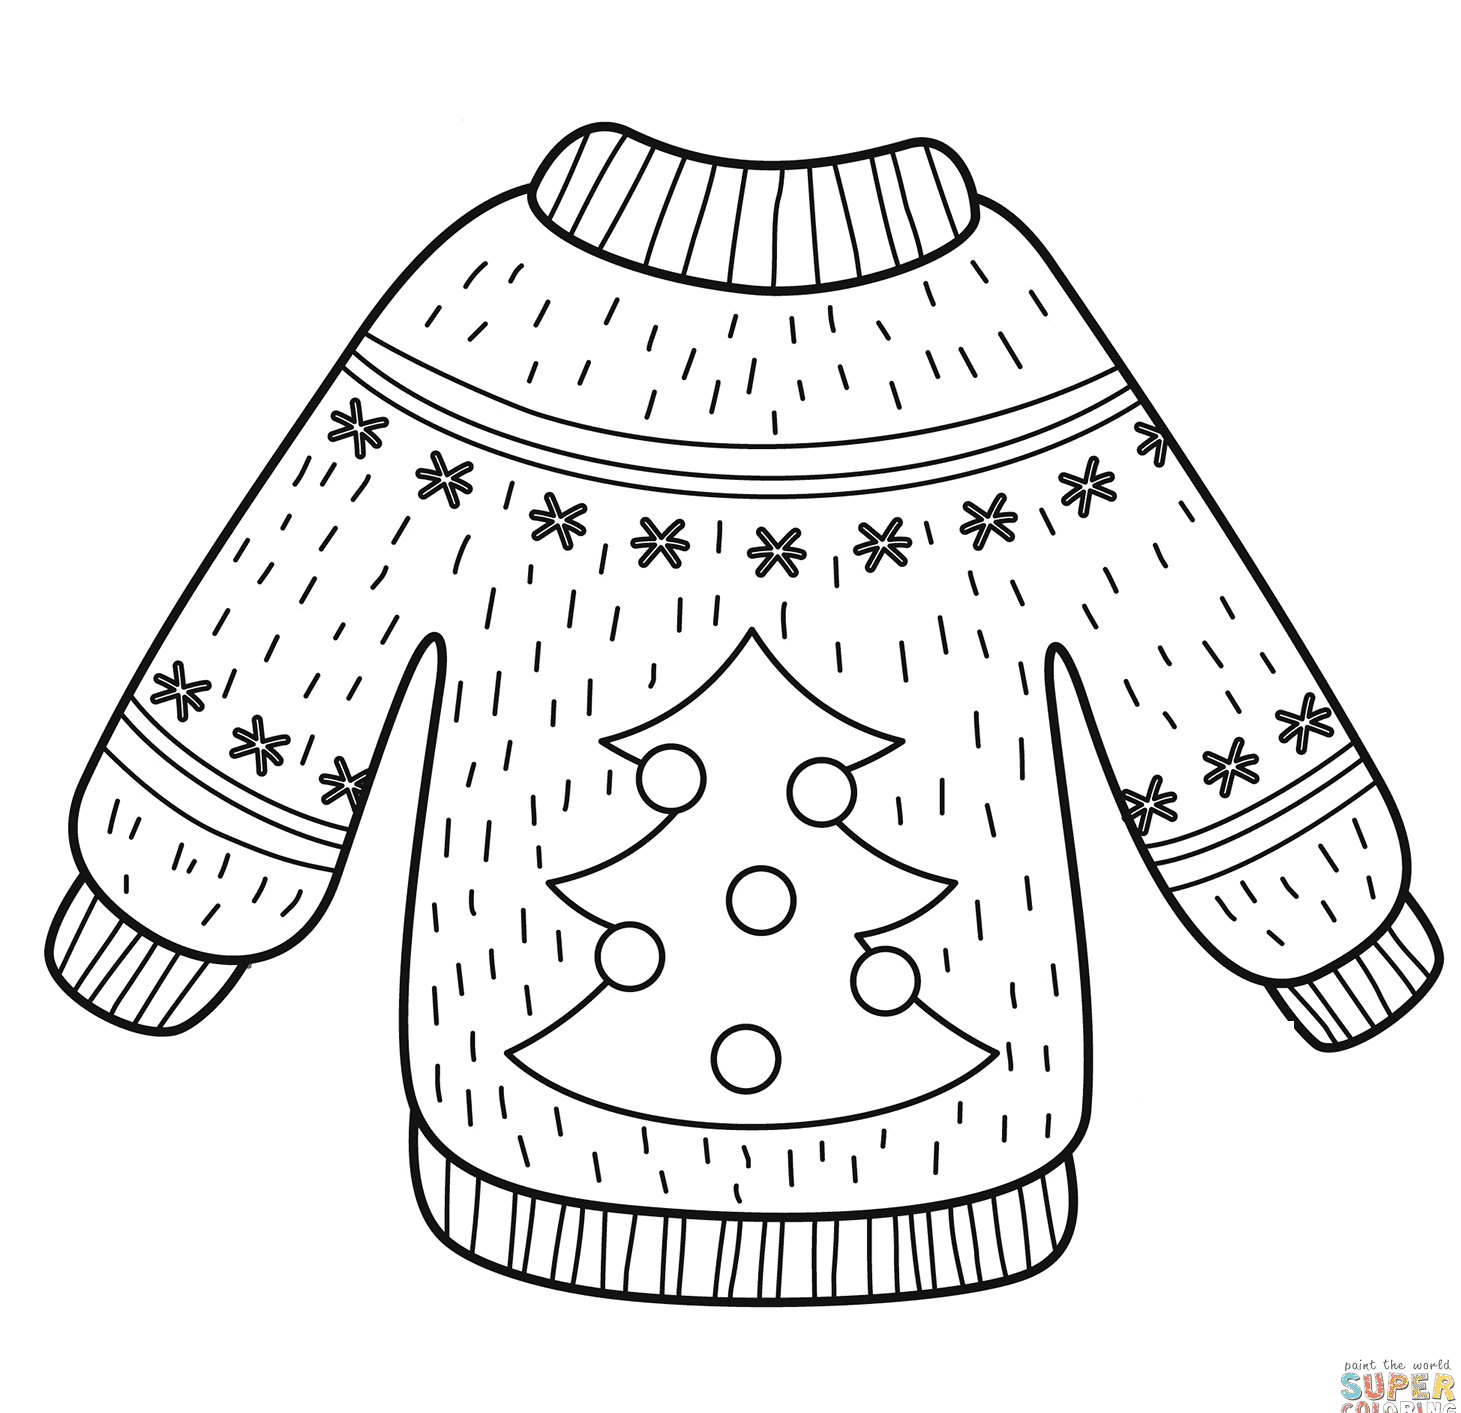 Grazioso maglione con albero di Natale from Christmas Sweater